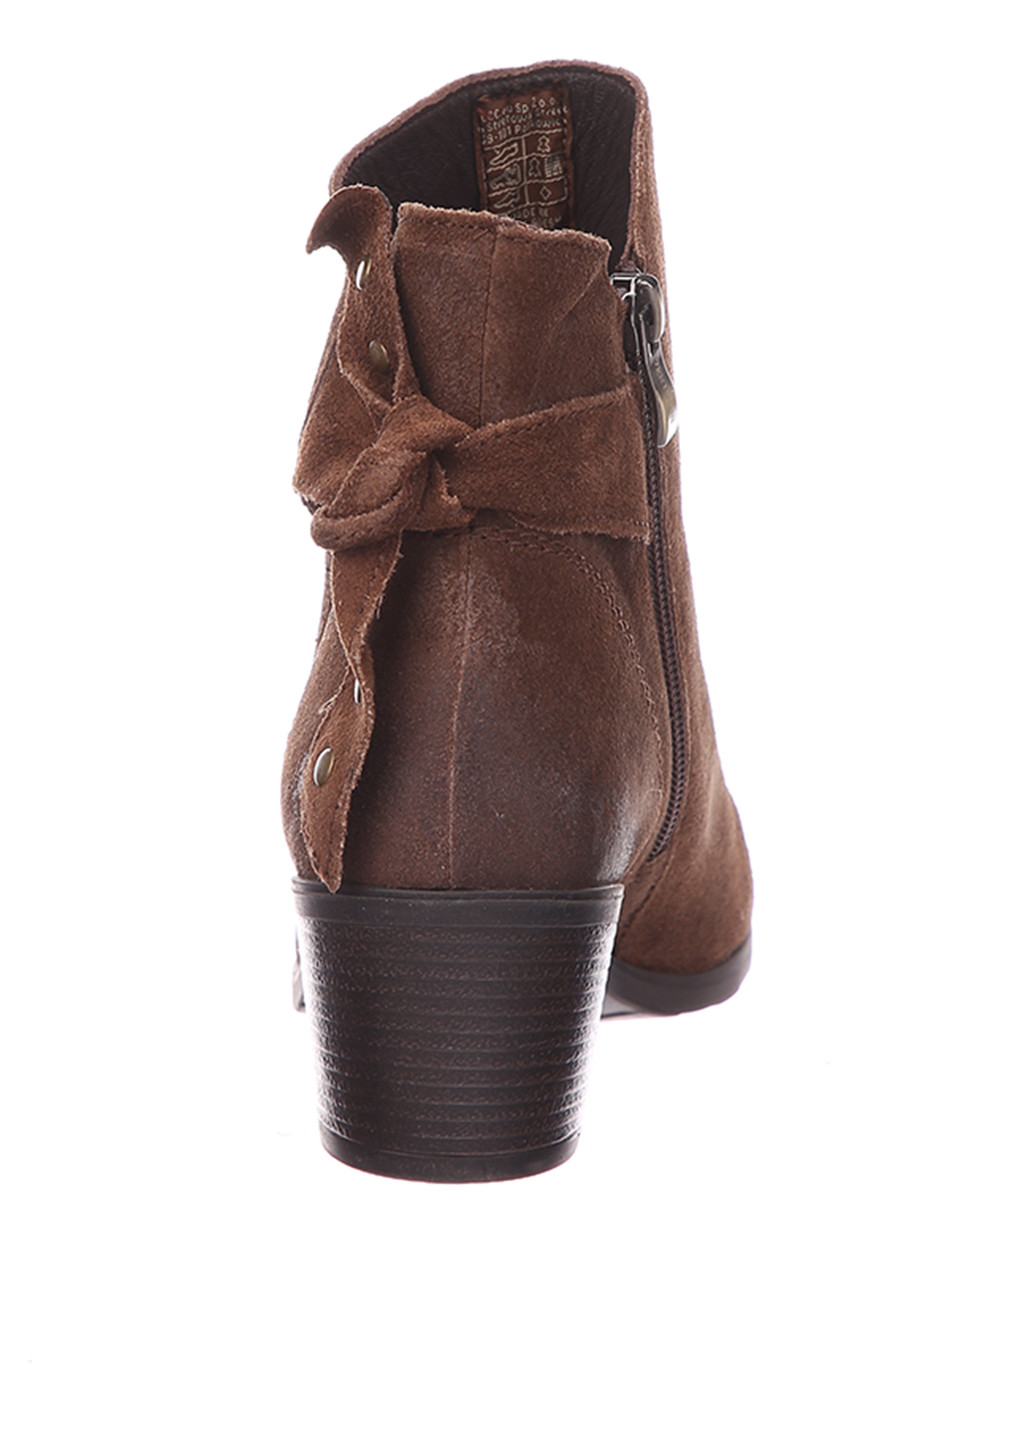 Осенние ботинки казаки Venturini с заклепками, с потертостями, завязки из натуральной замши